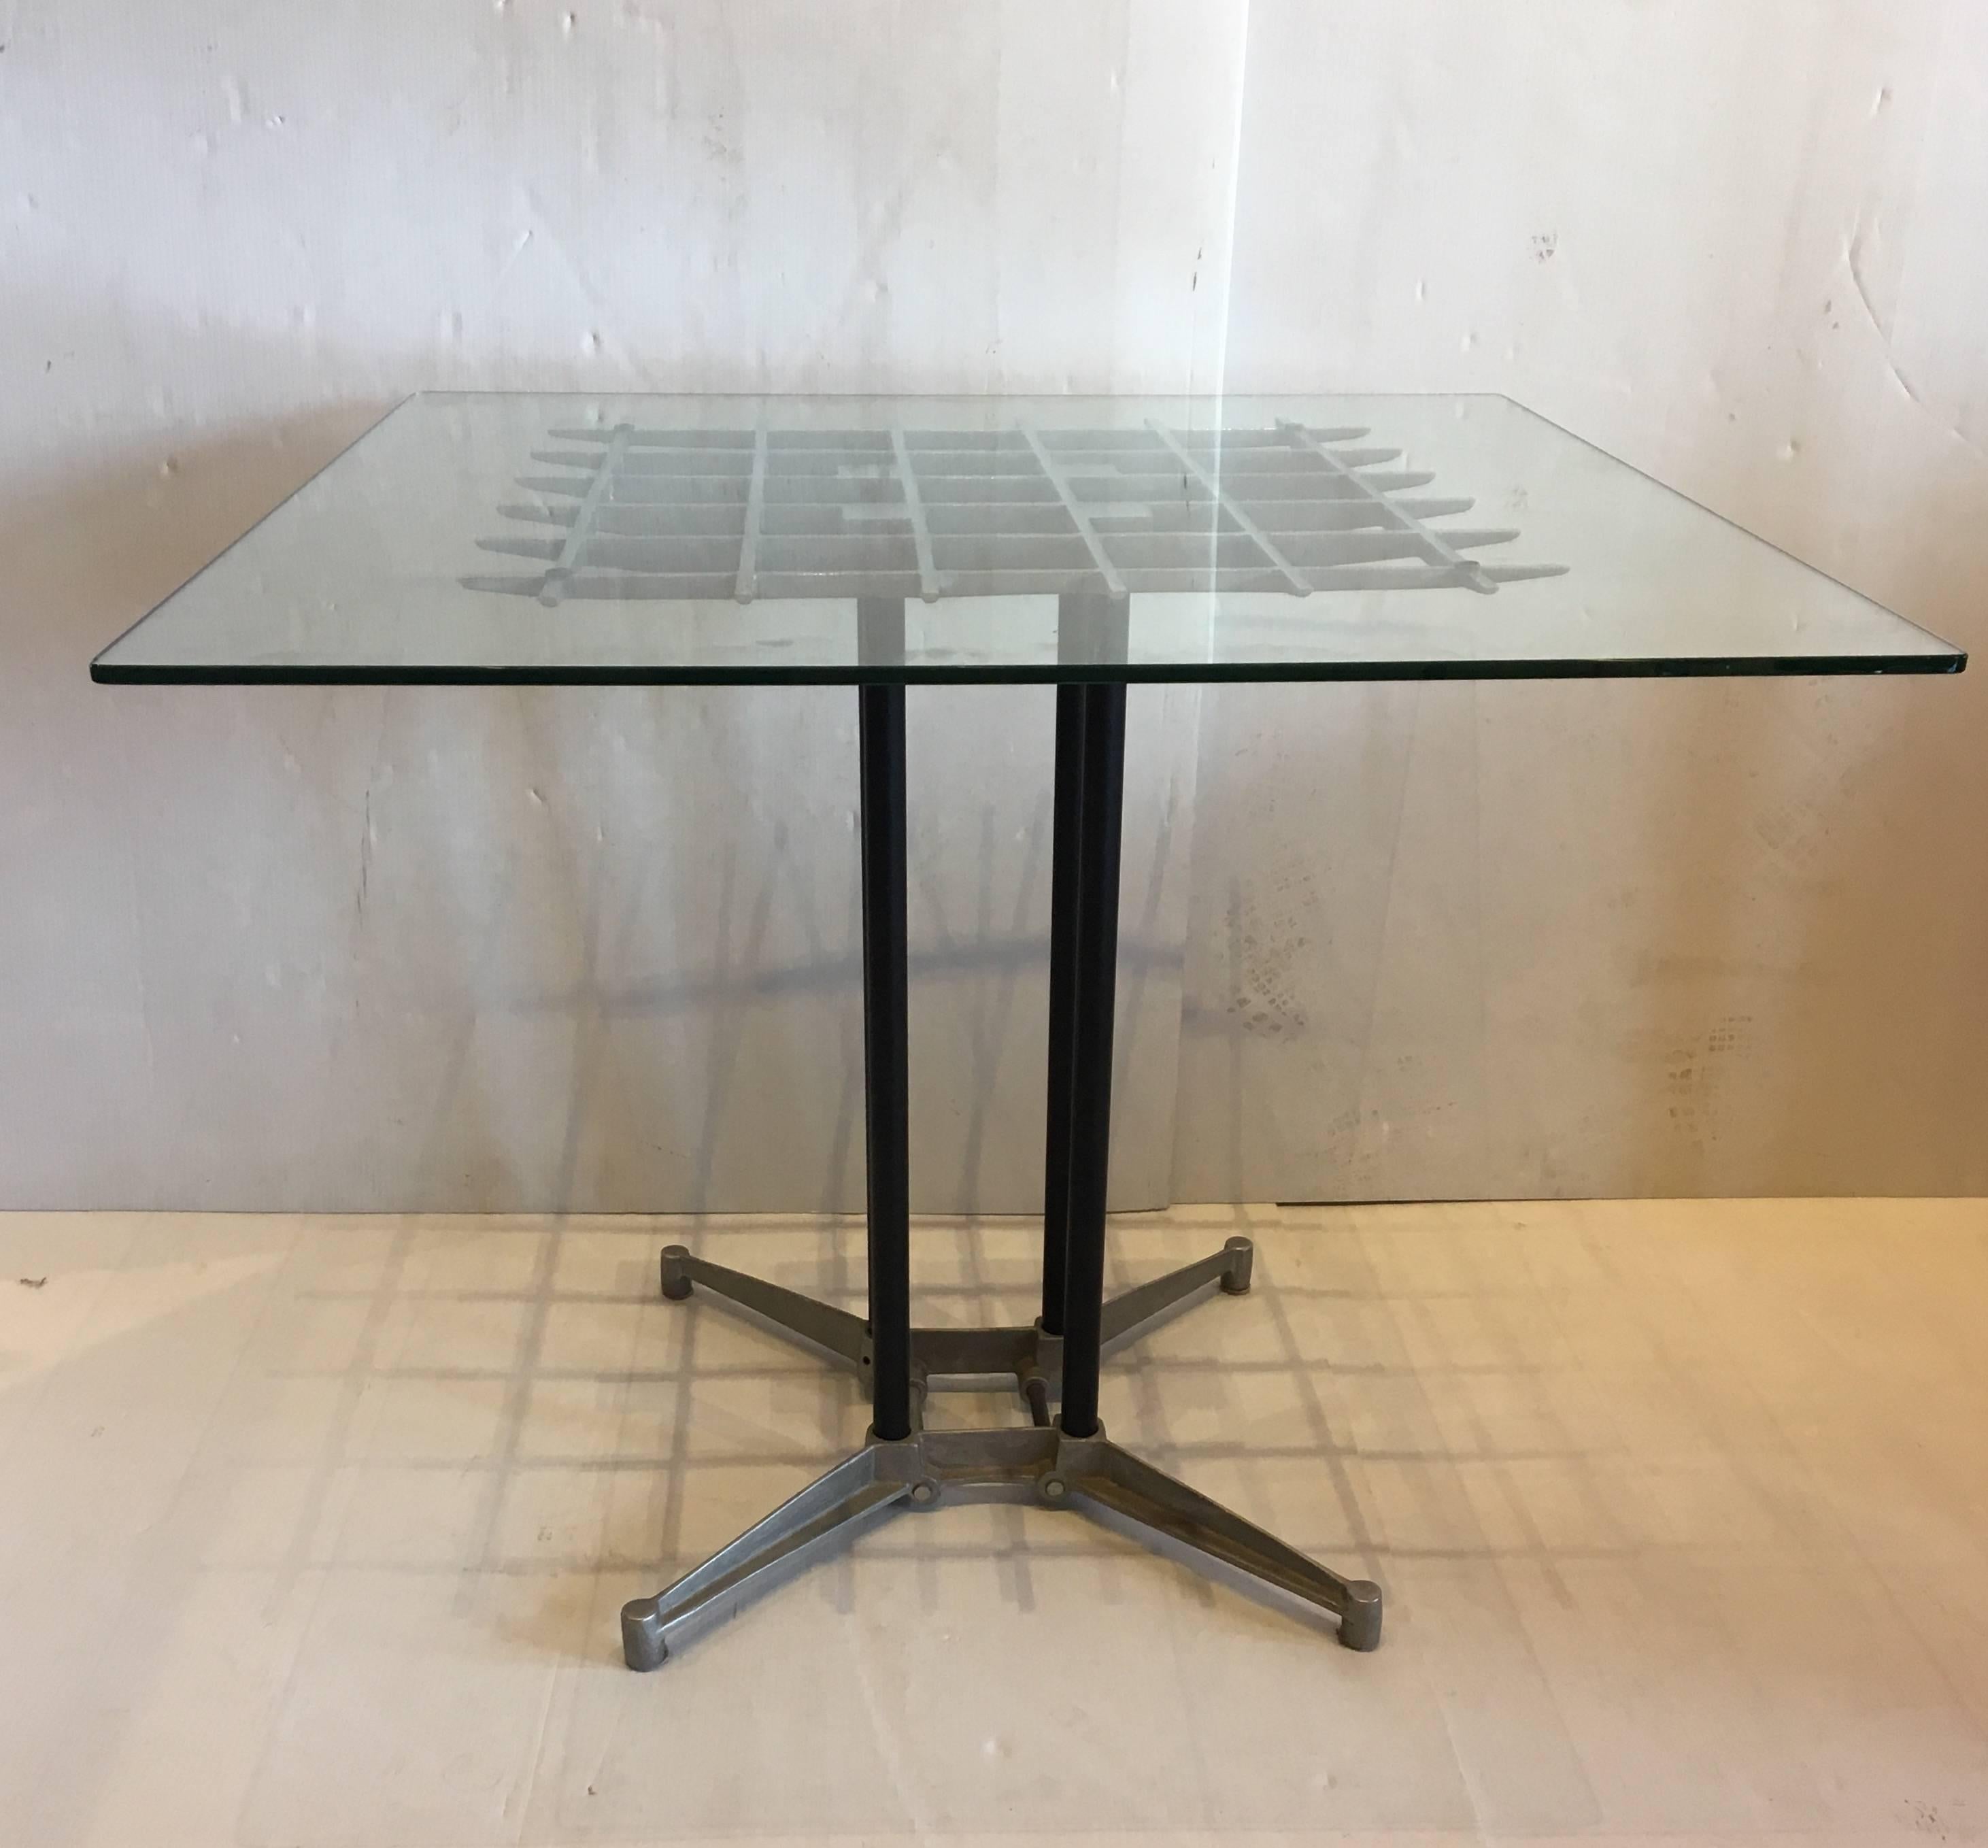 Tolles Design an diesem Esstisch aus poliertem Aluminium mit Grillplatte und vier schwarz emaillierten Rohrpfosten, entworfen von Robert Josten, ca. 1980er Jahre. California Designer mit einer Glasplatte, die bei Bedarf durch eine größere ersetzt